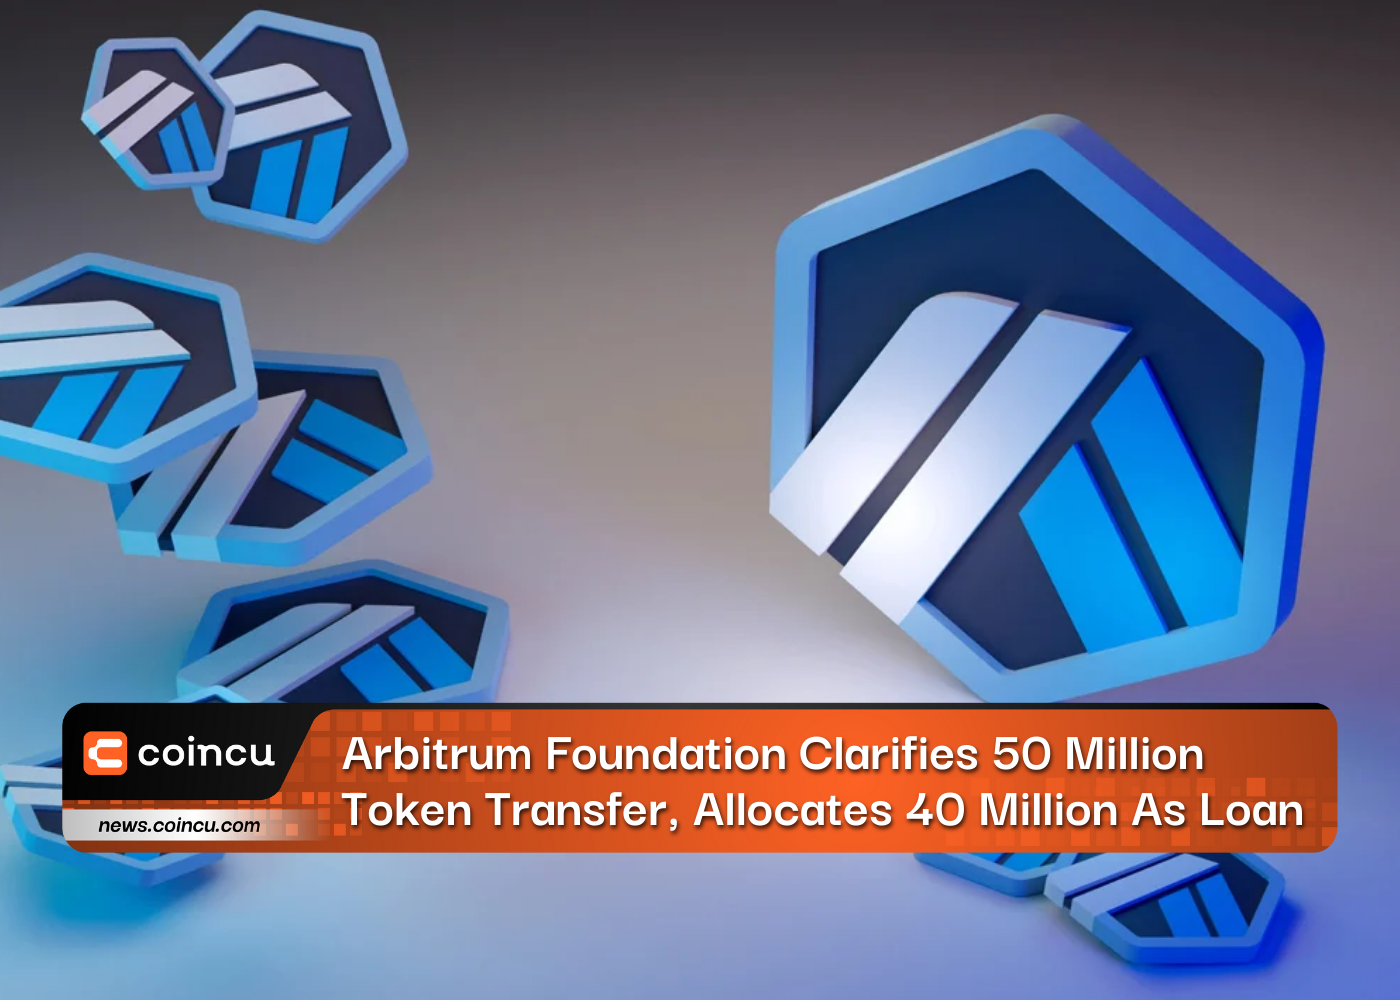 La Fundación Arbitrum aclara la transferencia de 50 millones de tokens y asigna 40 millones como préstamo